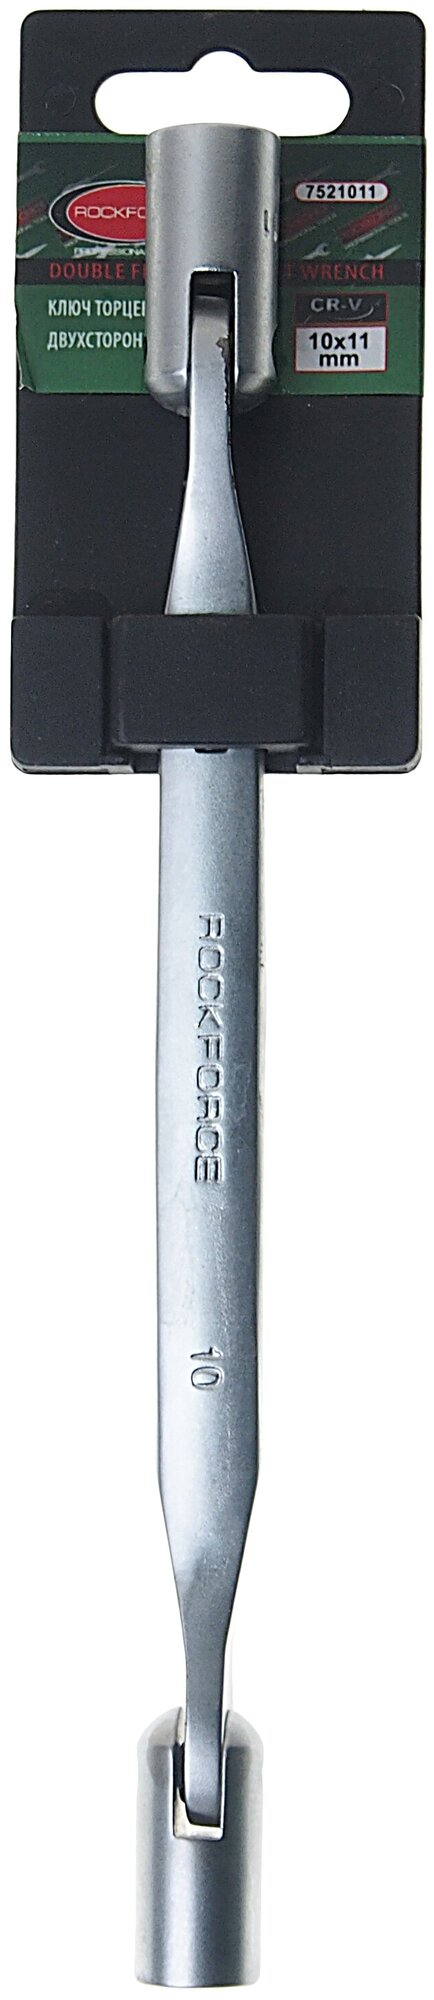 Ключ торцевой шарнирный двухсторонний 10х11мм на пластиковом держателе ROCKFORCE /1/10 ROCKFORCERF-7521011